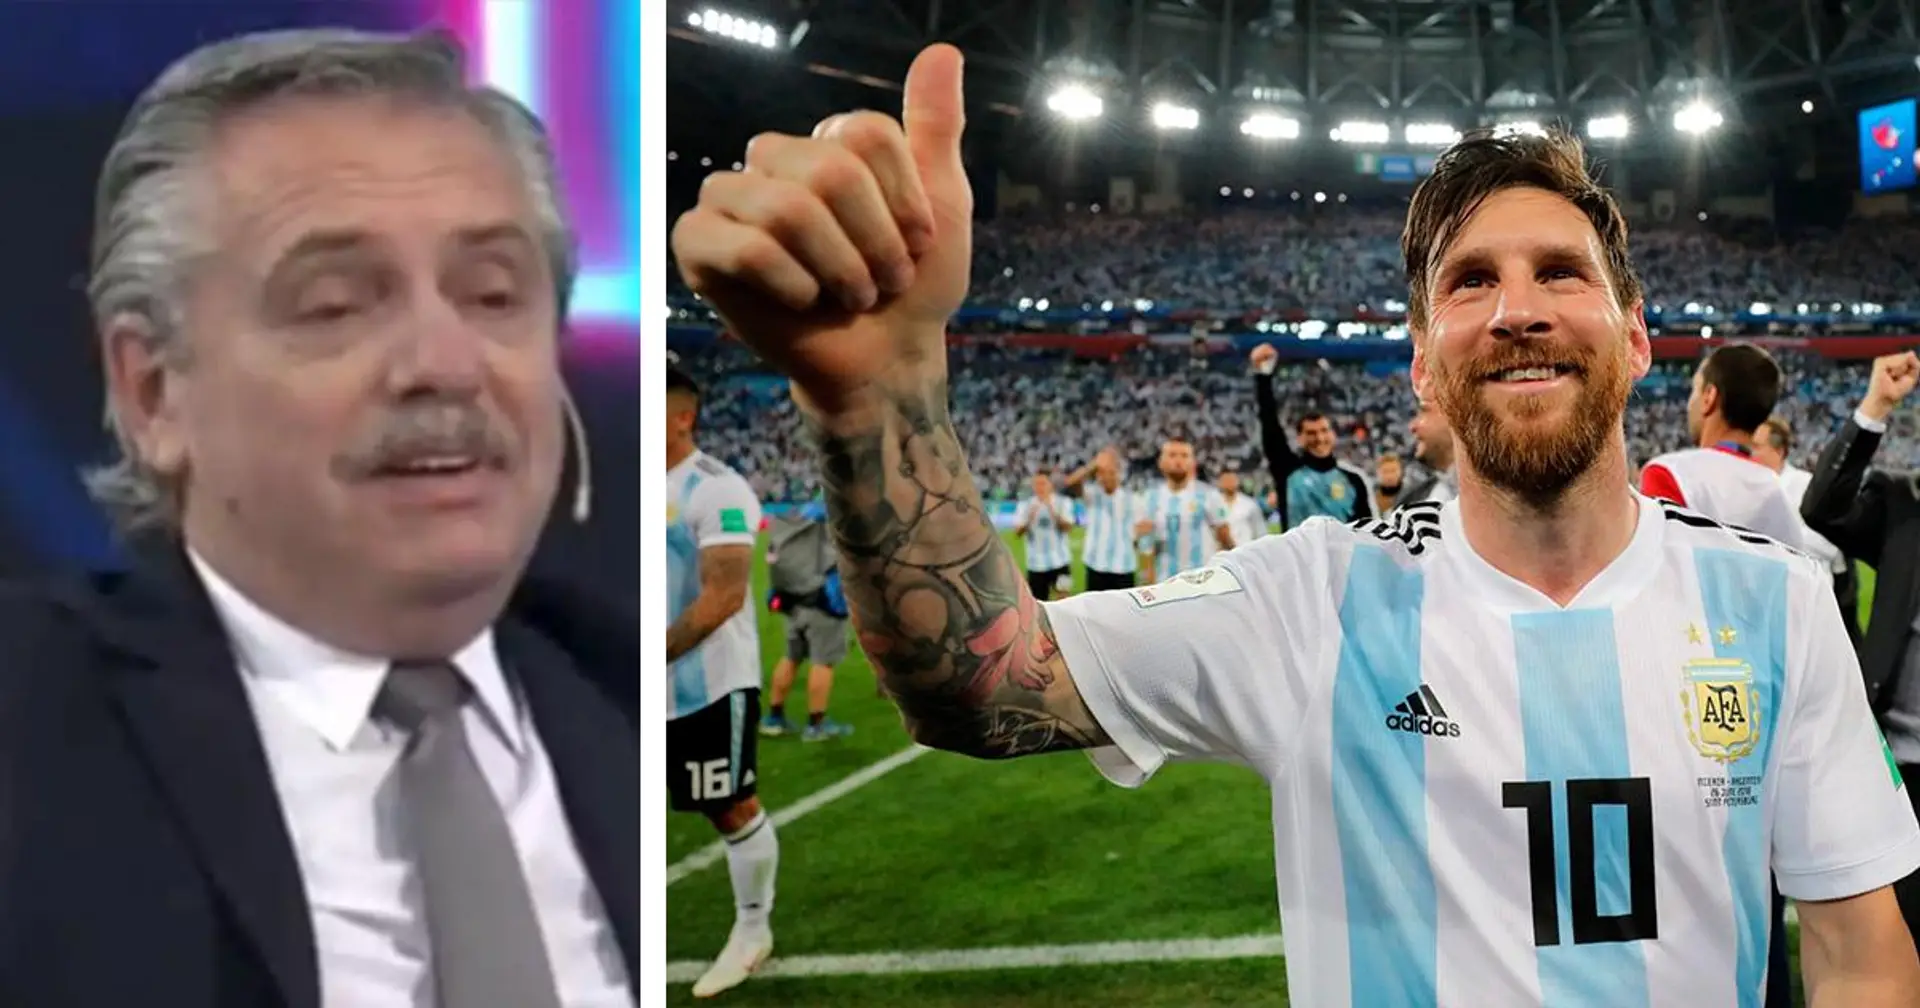 "Donnez-nous le plaisir de venir terminer votre carrière chez Newell's": Le président argentin envoie un message d'invitation à Messi